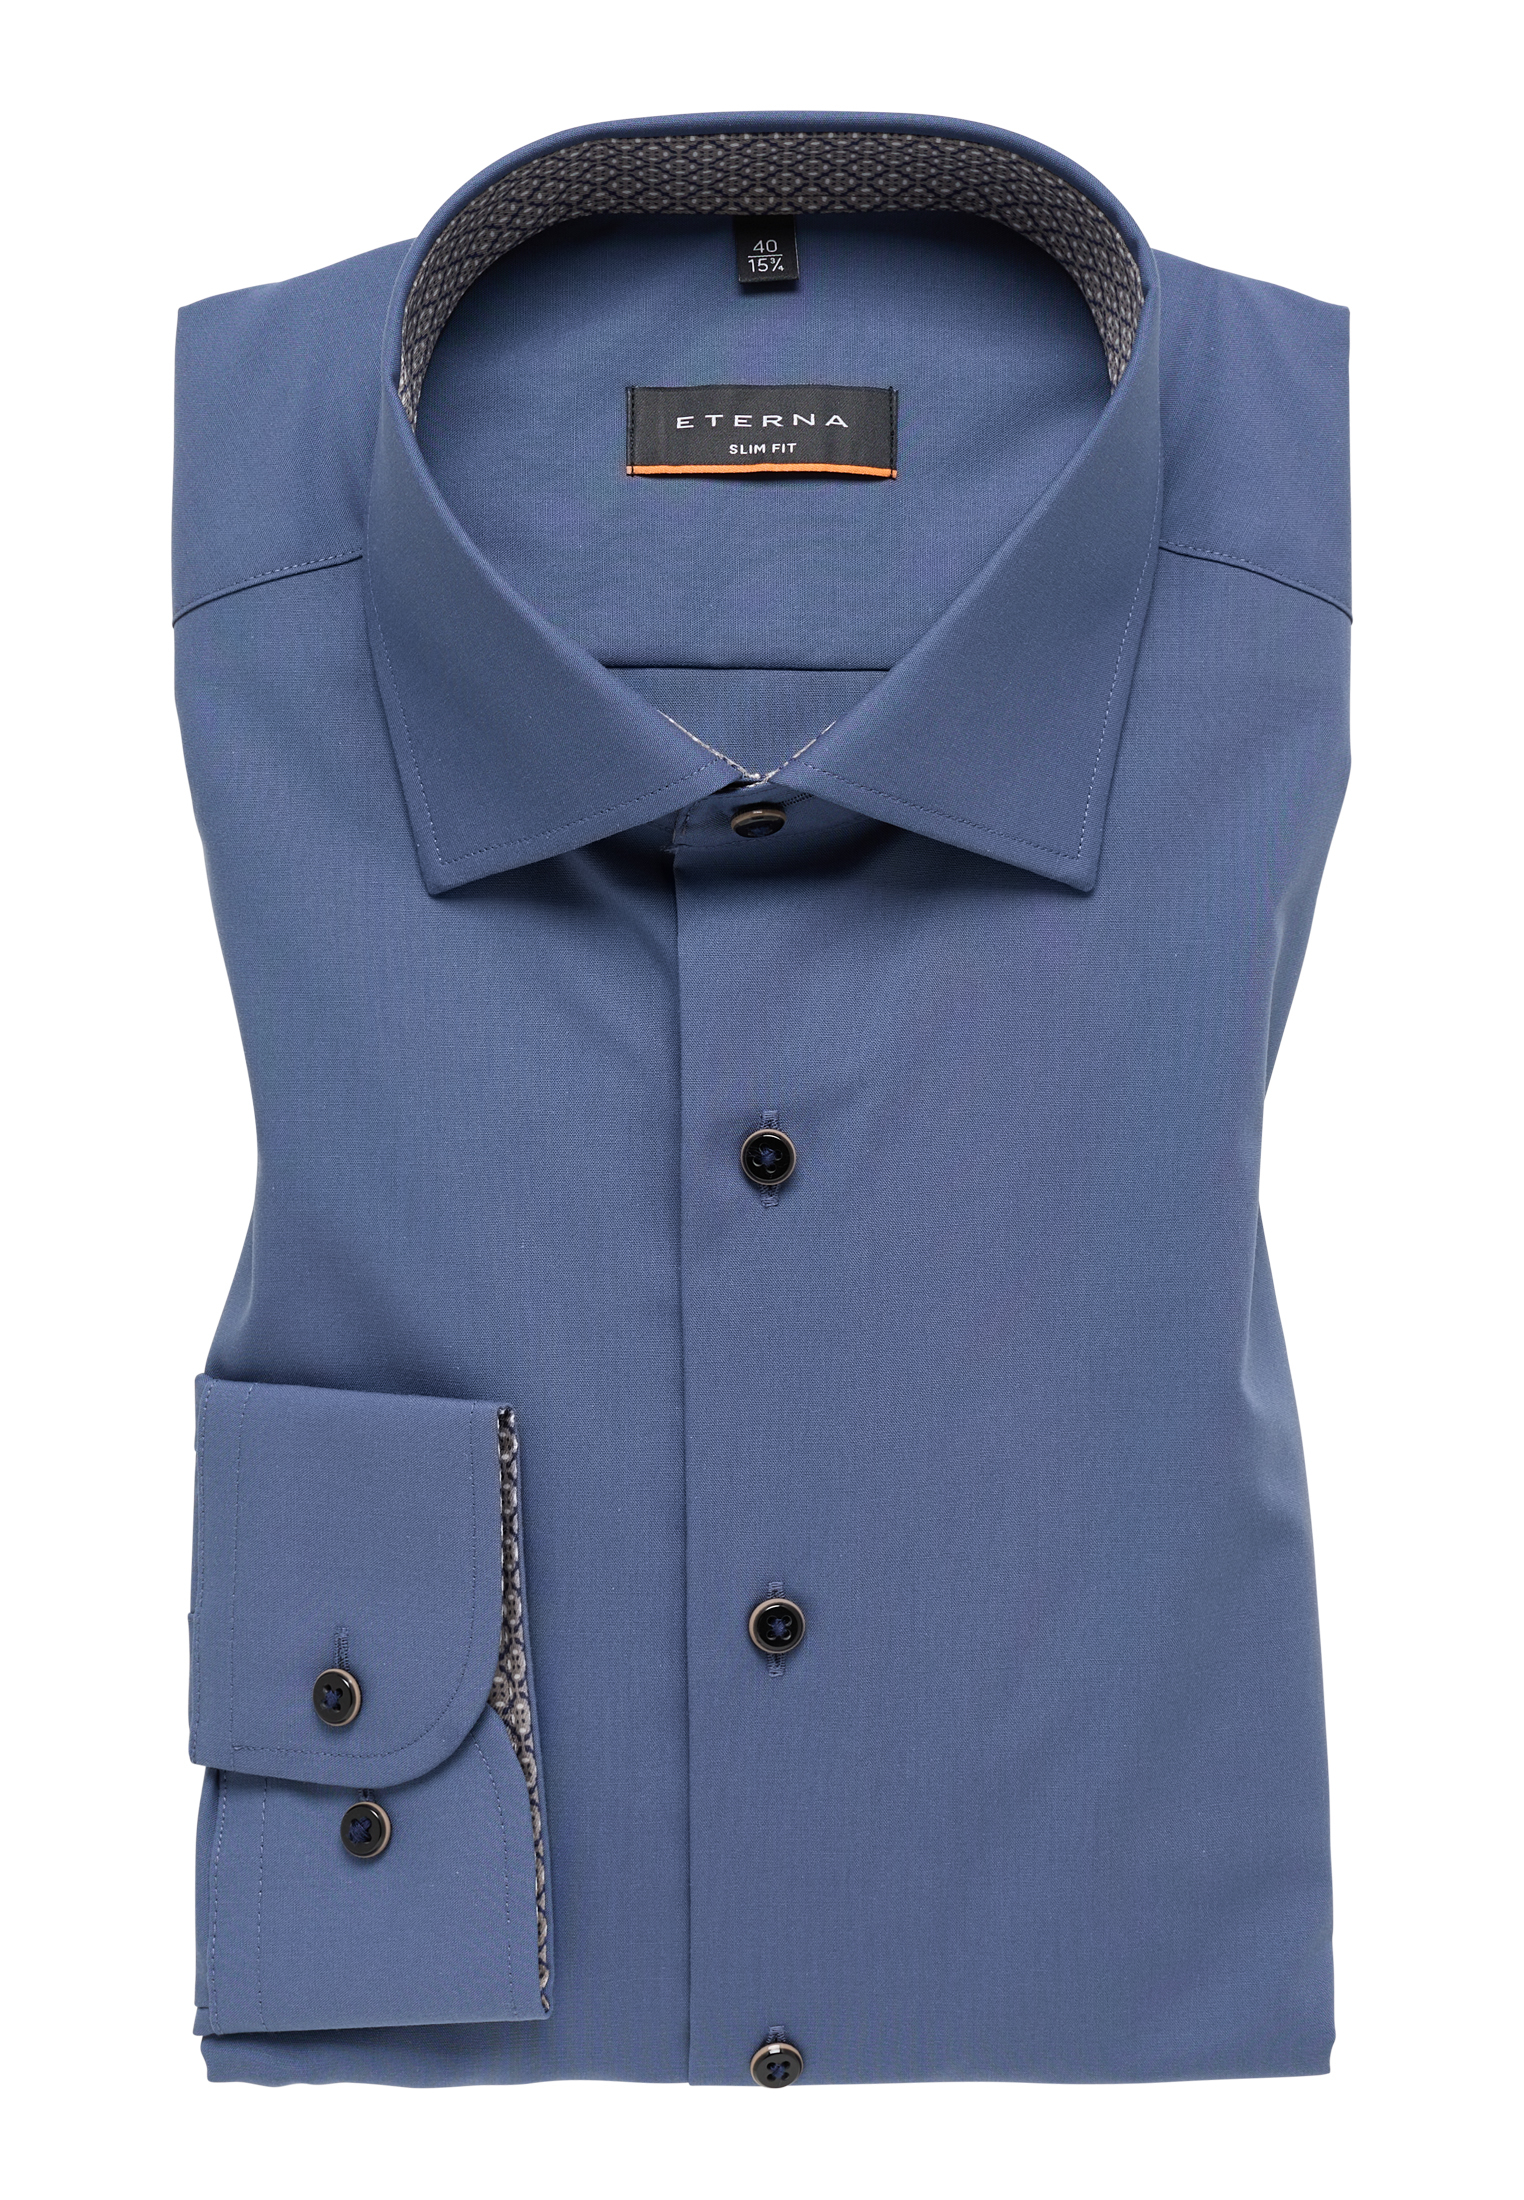 SLIM FIT Original Shirt in rauchblau unifarben | rauchblau | 46 | super  langer Arm (72 cm) | 1SH11516-01-62-46-72